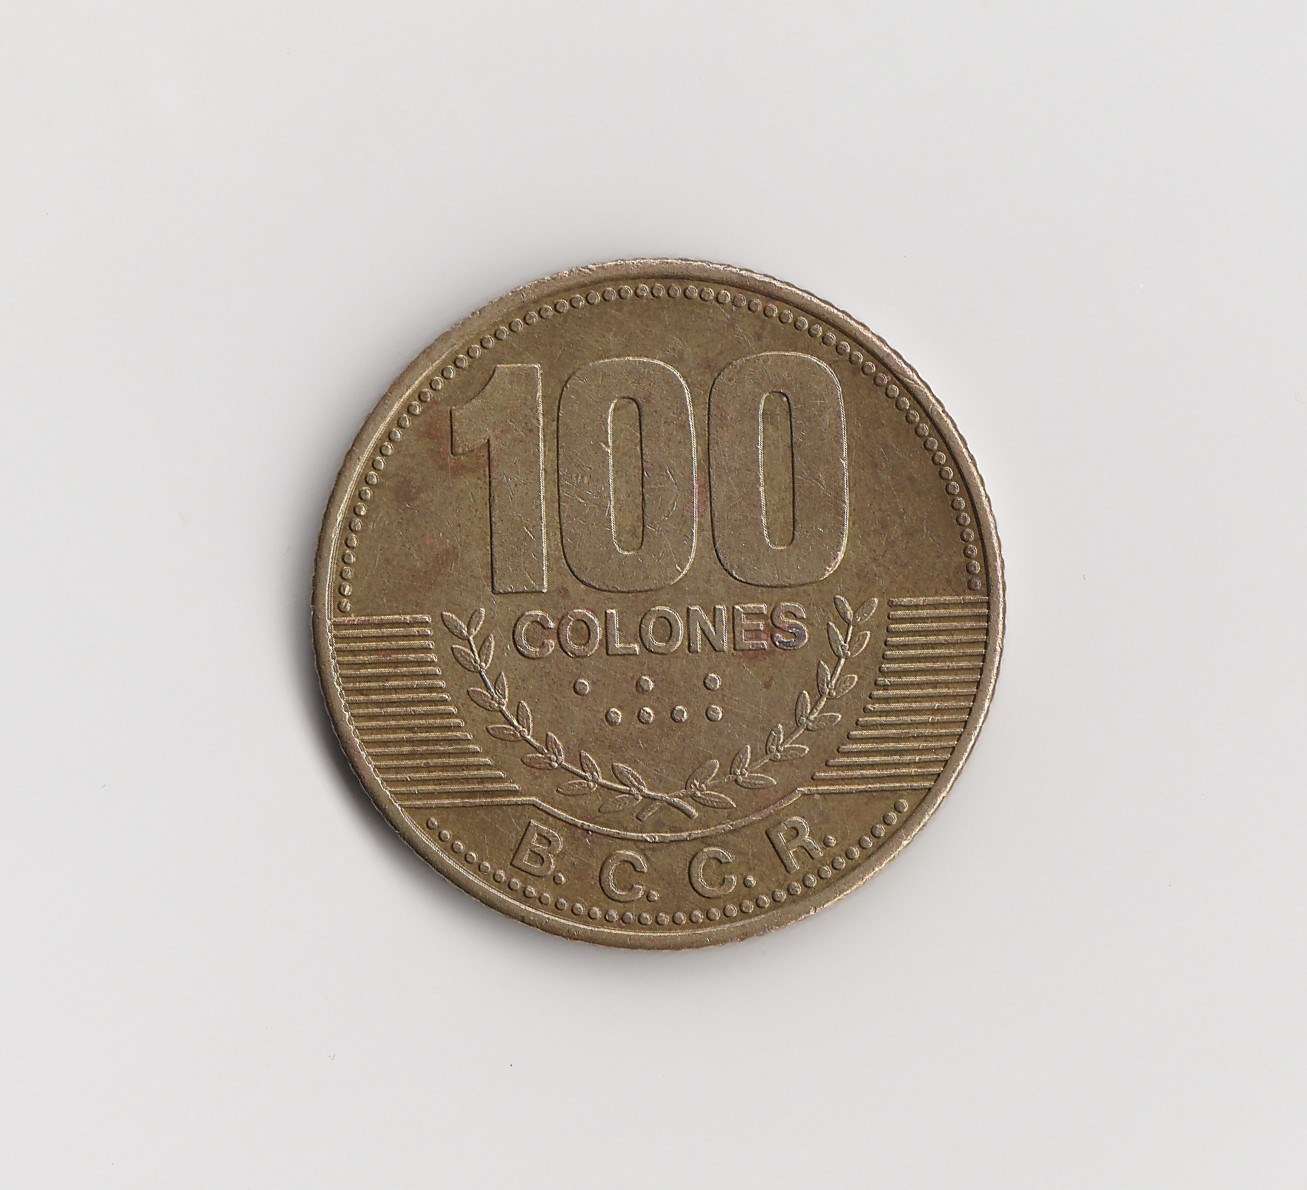  100 Colones Costa Rica 2007 (I903)   